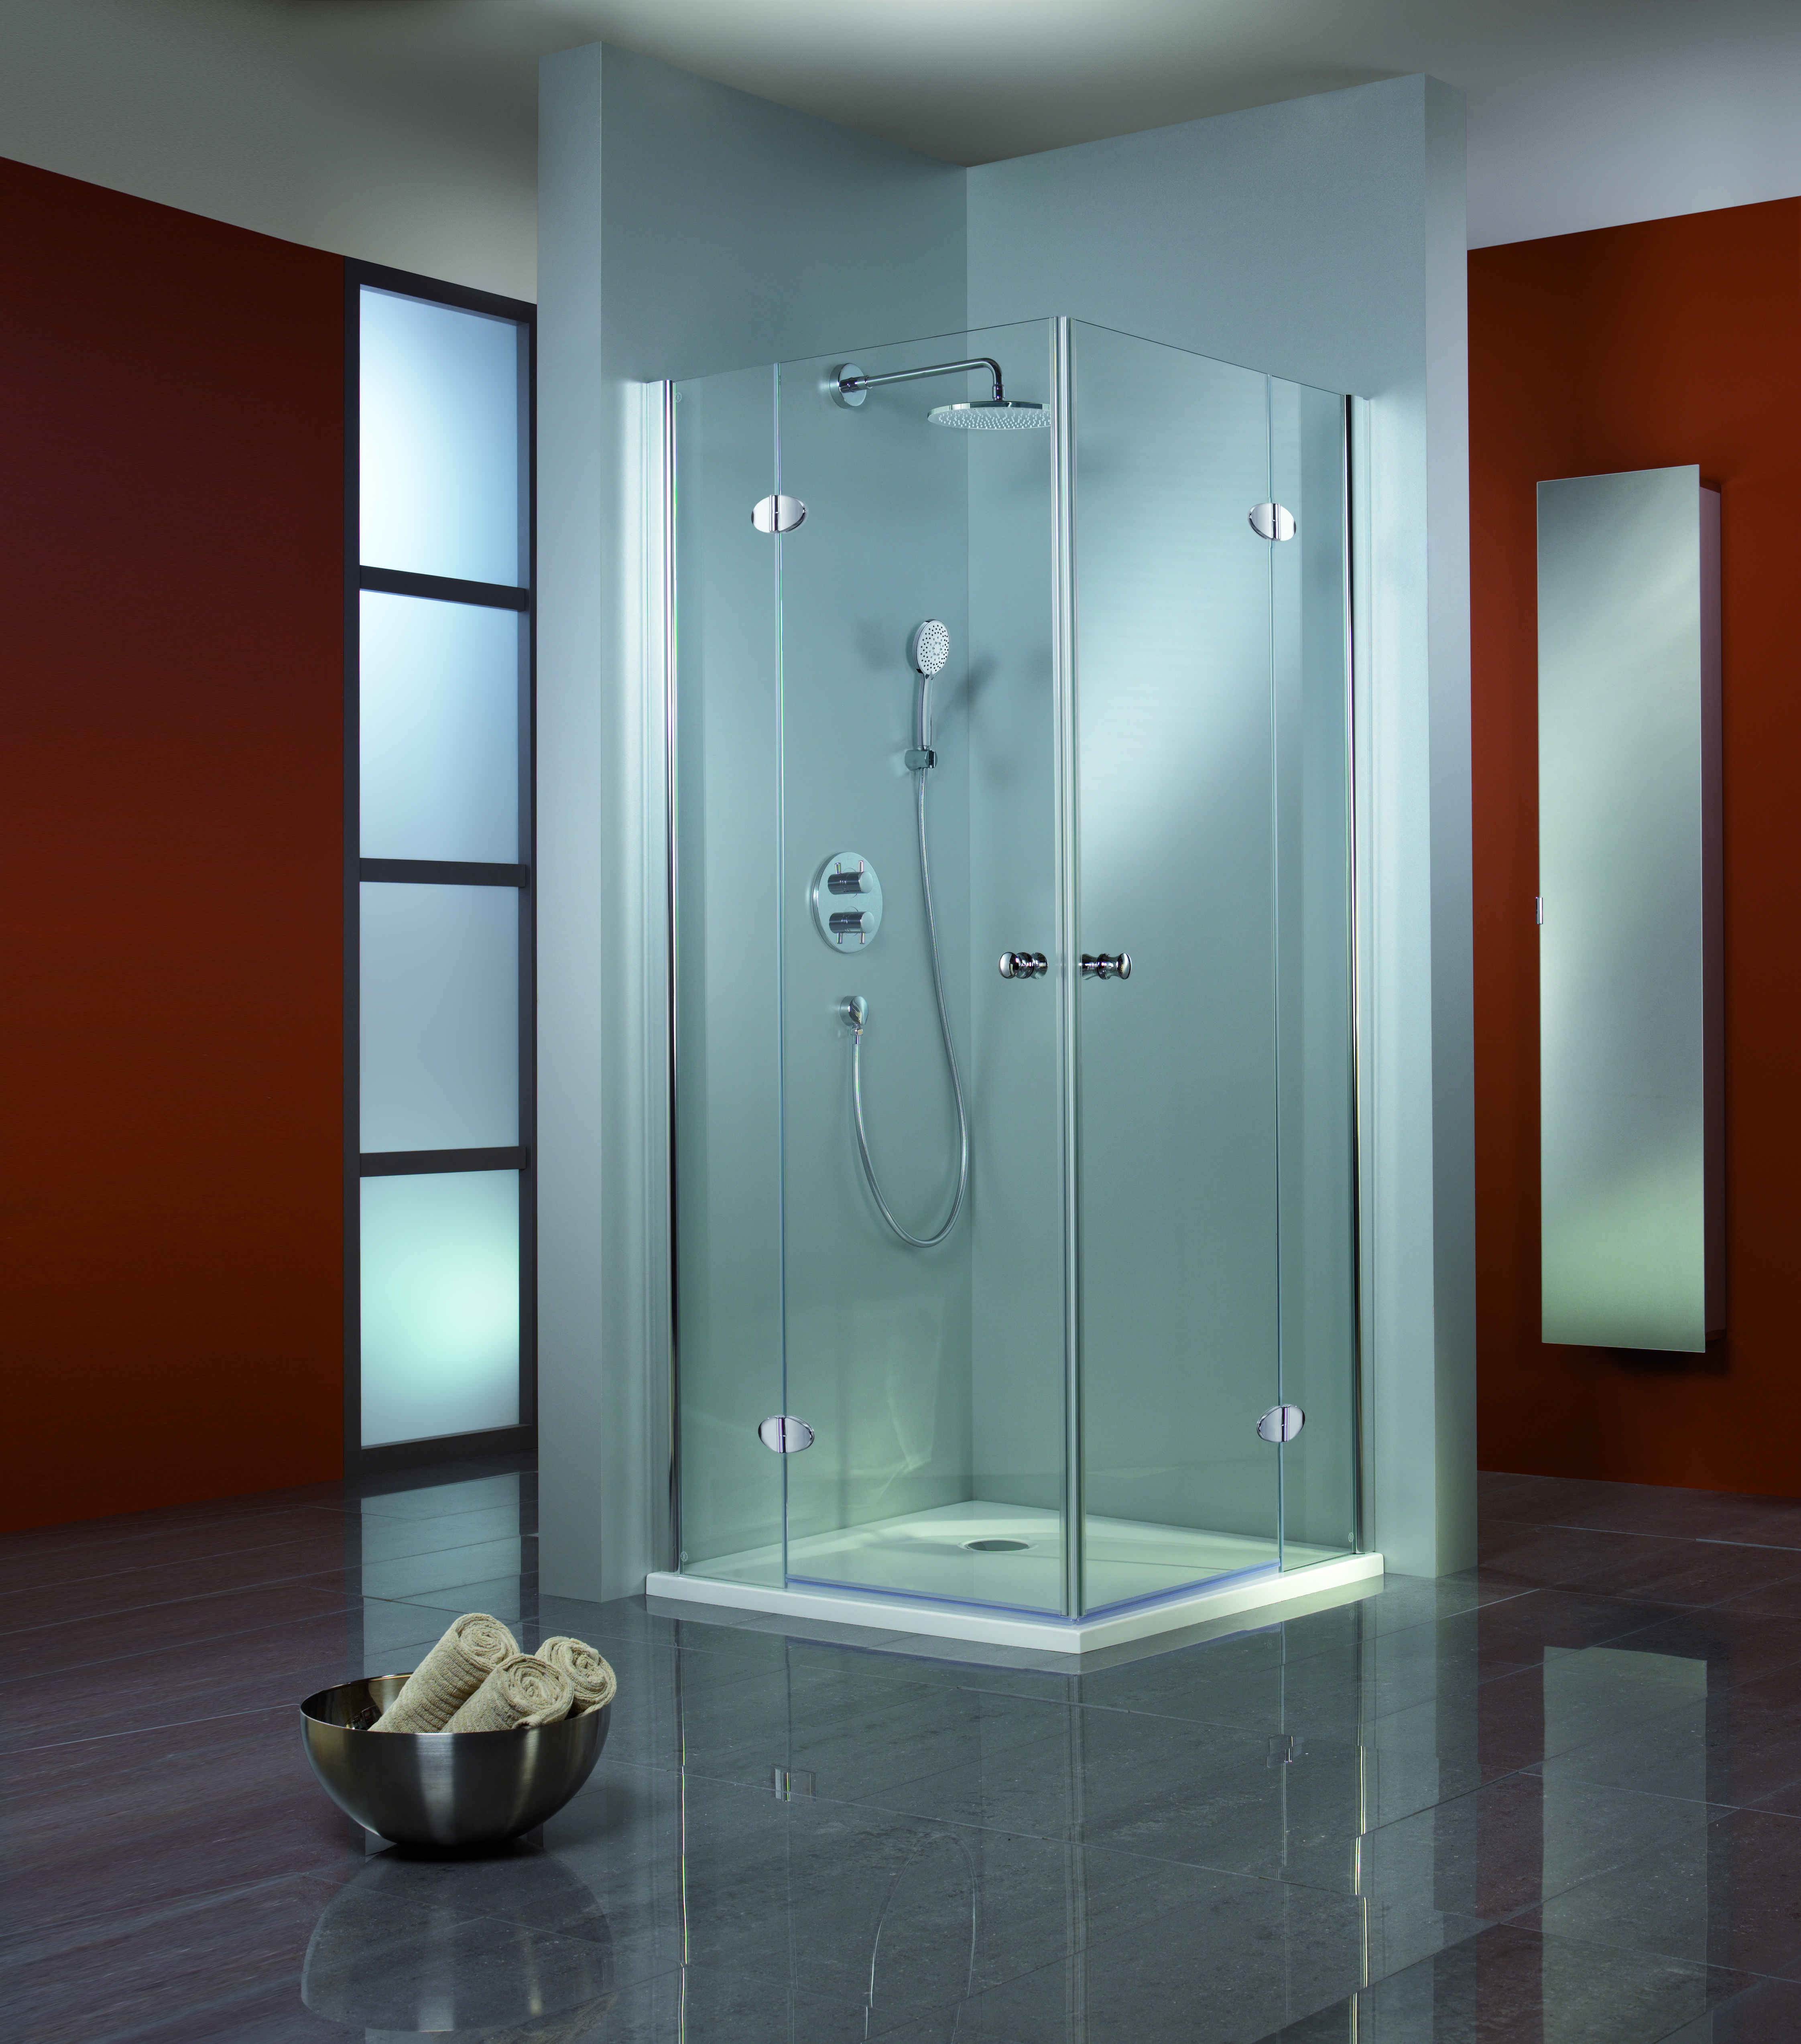 HSK Premium Classic Dusche mit Eckeinstieg 80x90 cm ohne/Linea 02/alu silbermatt